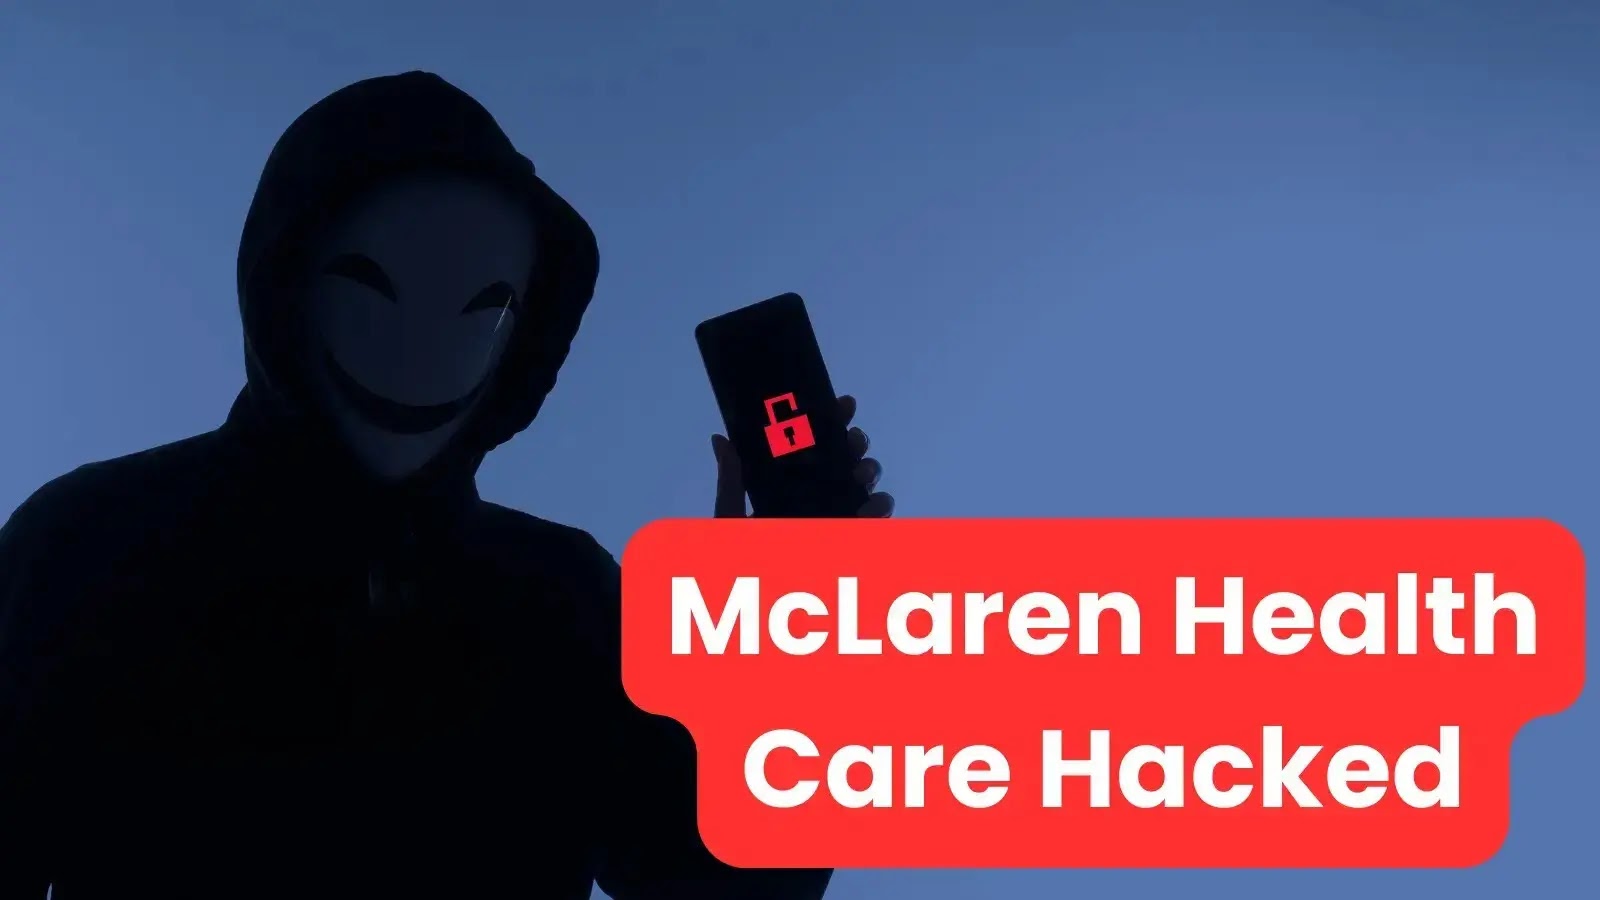 McLaren Health Care Hacked